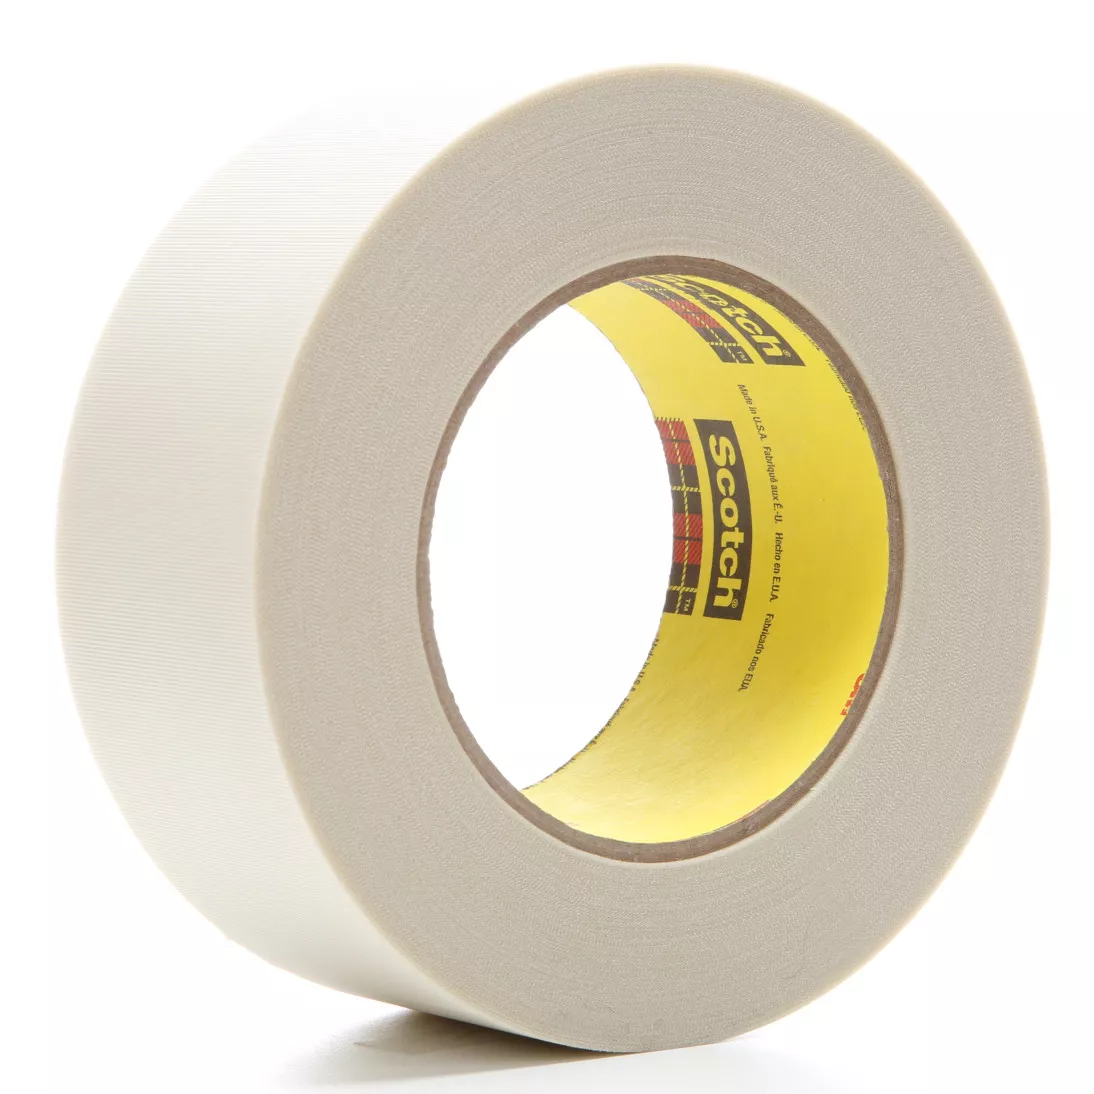 3M™ Glass Cloth Tape 361, White, 2 in x 60 yd, 6.4 mil, 24 rolls per
case